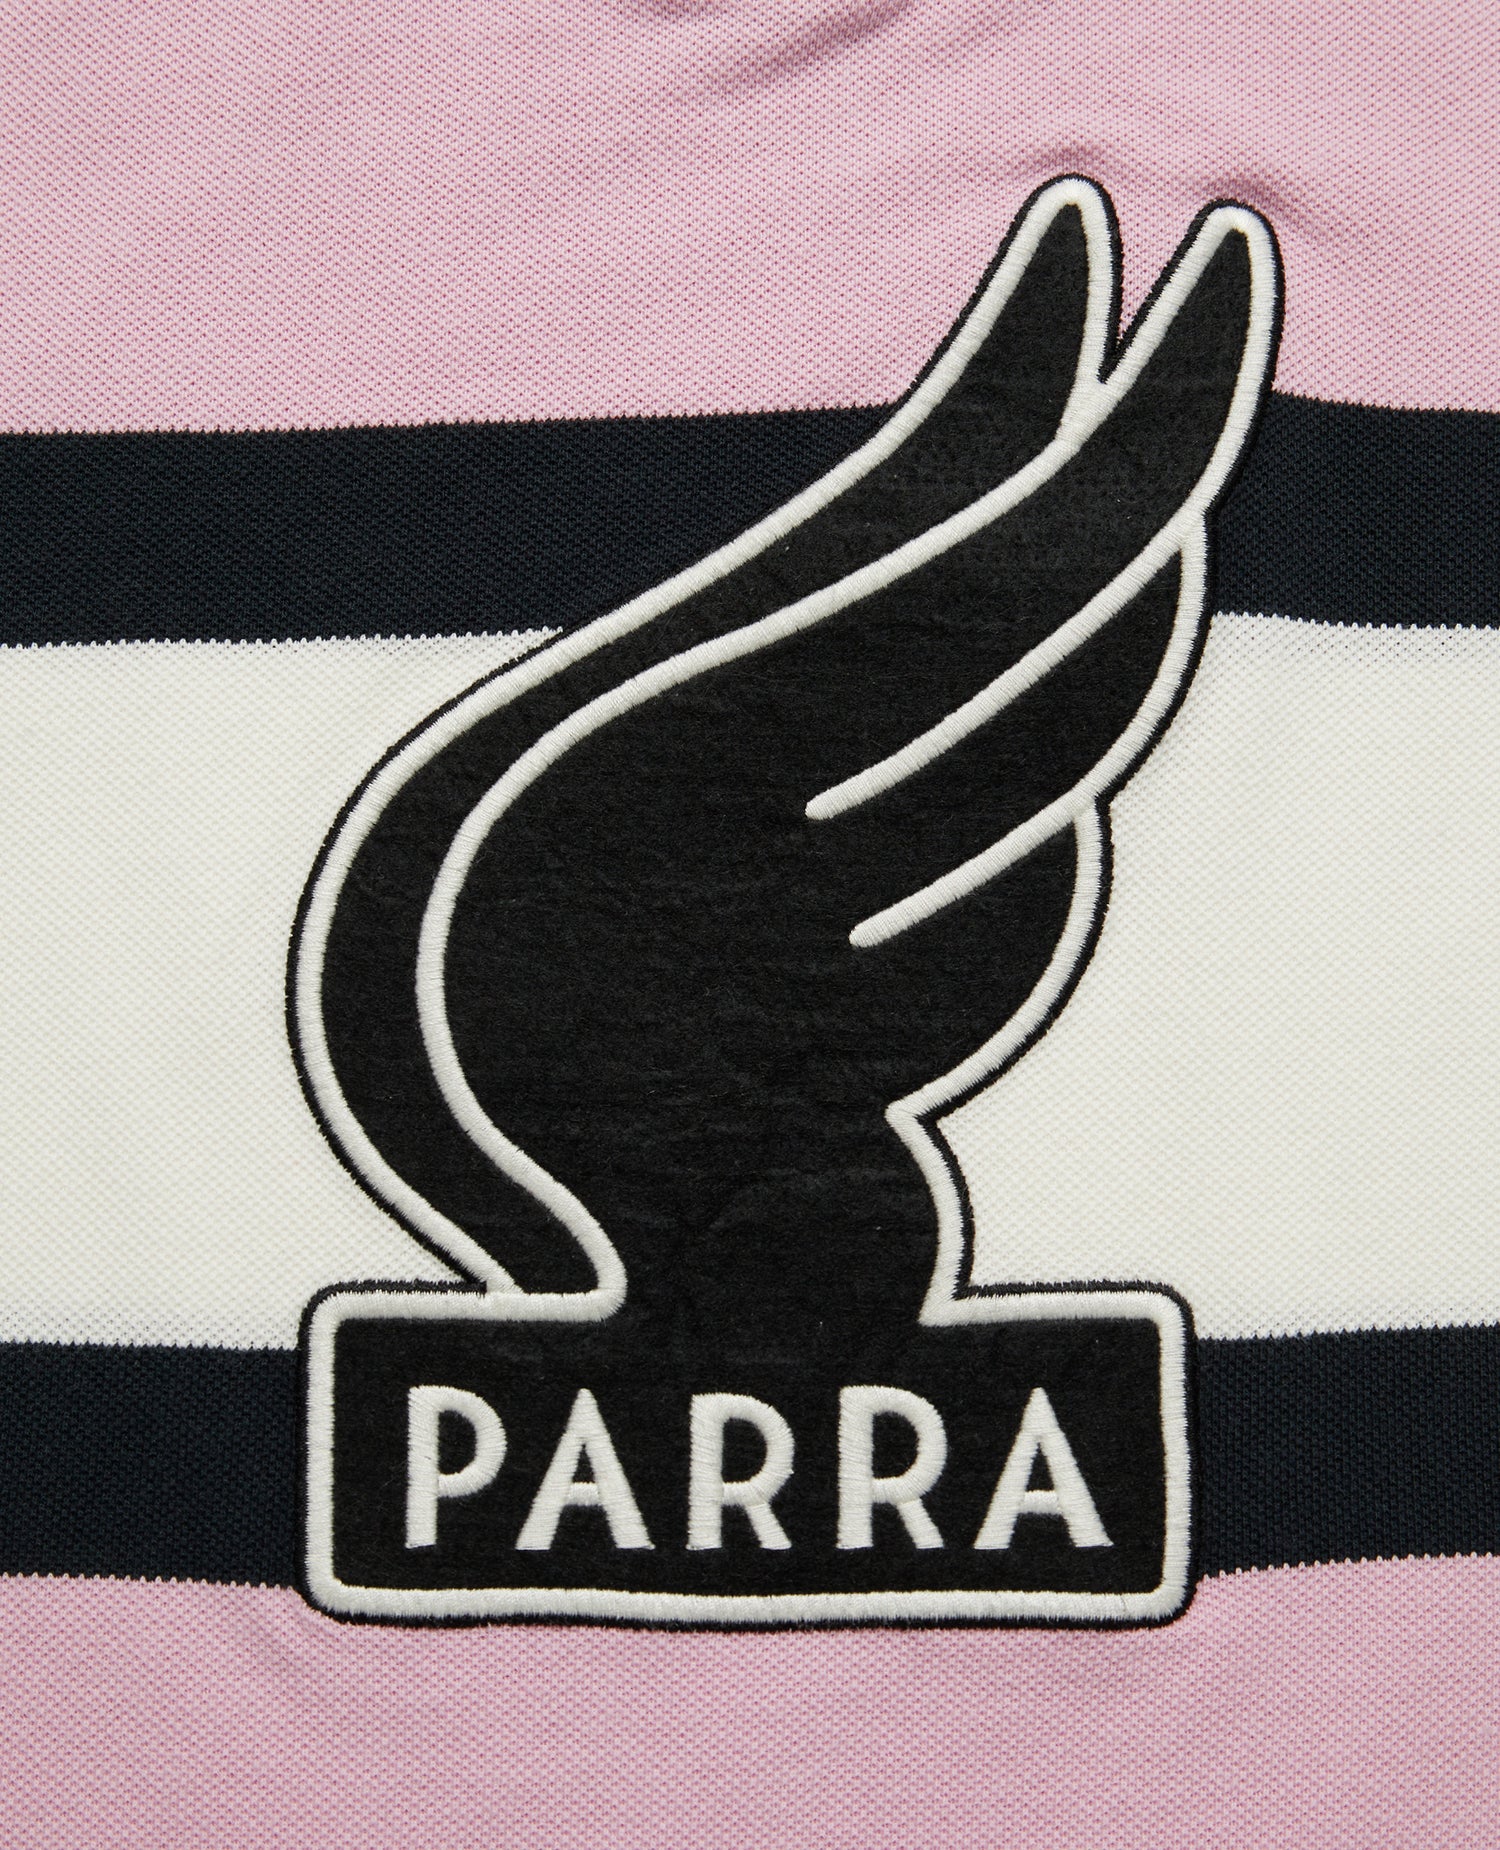 byParra Polo avec logo ailé (rose/blanc cassé)